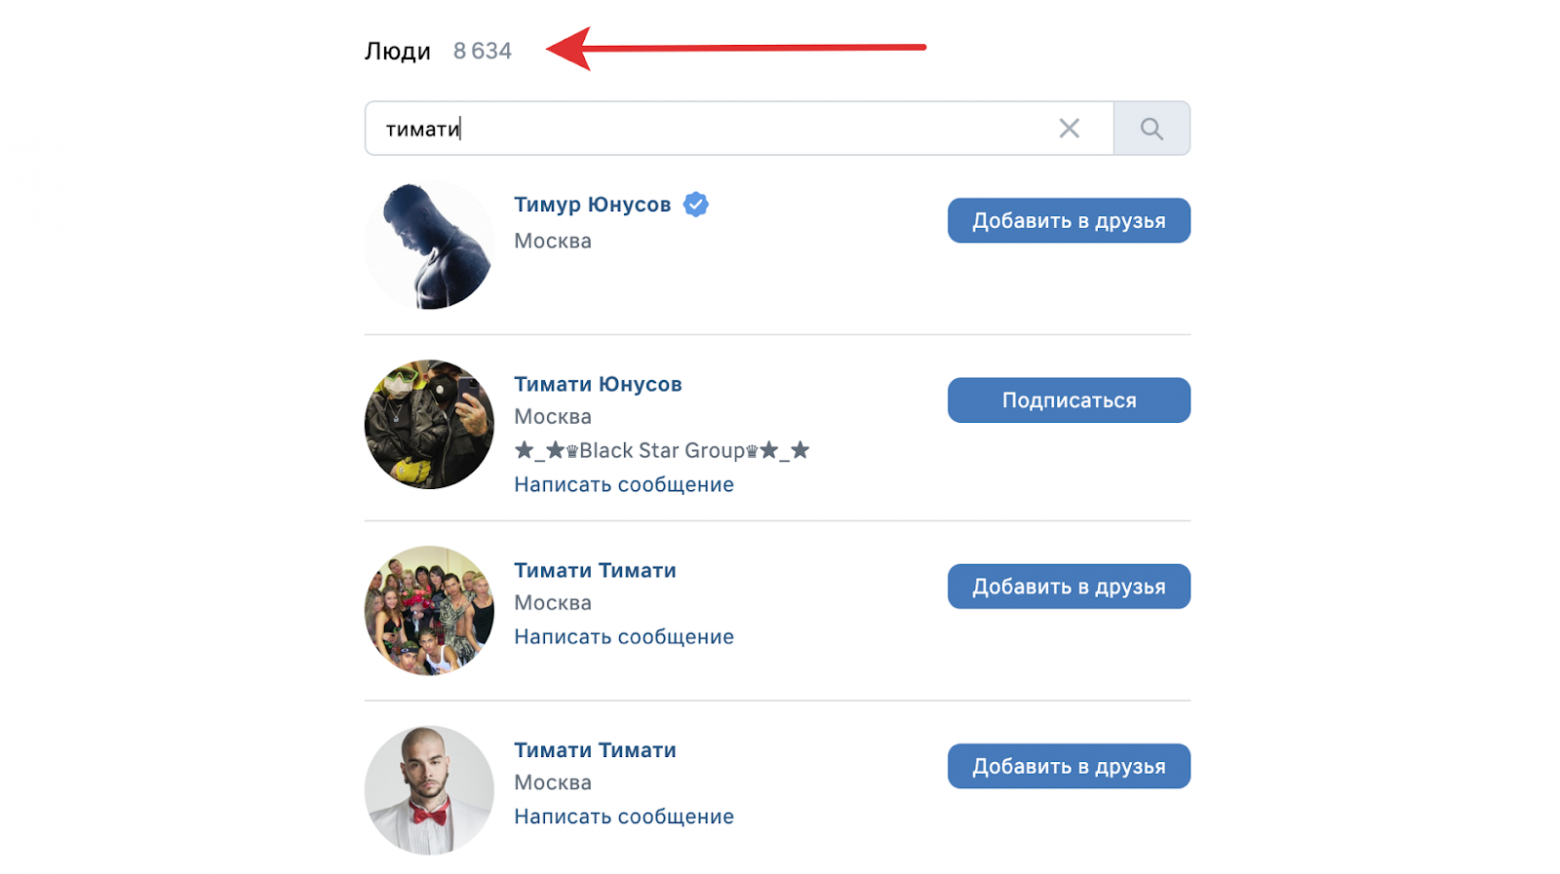 Например, пользователь ВКонтакте хочет найти Тимати в поиске по людям, а в соцсети музыкант записан как Тимур Юнусов. А может, на самом деле человек ищет своего знакомого с таким именем — или друга друзей